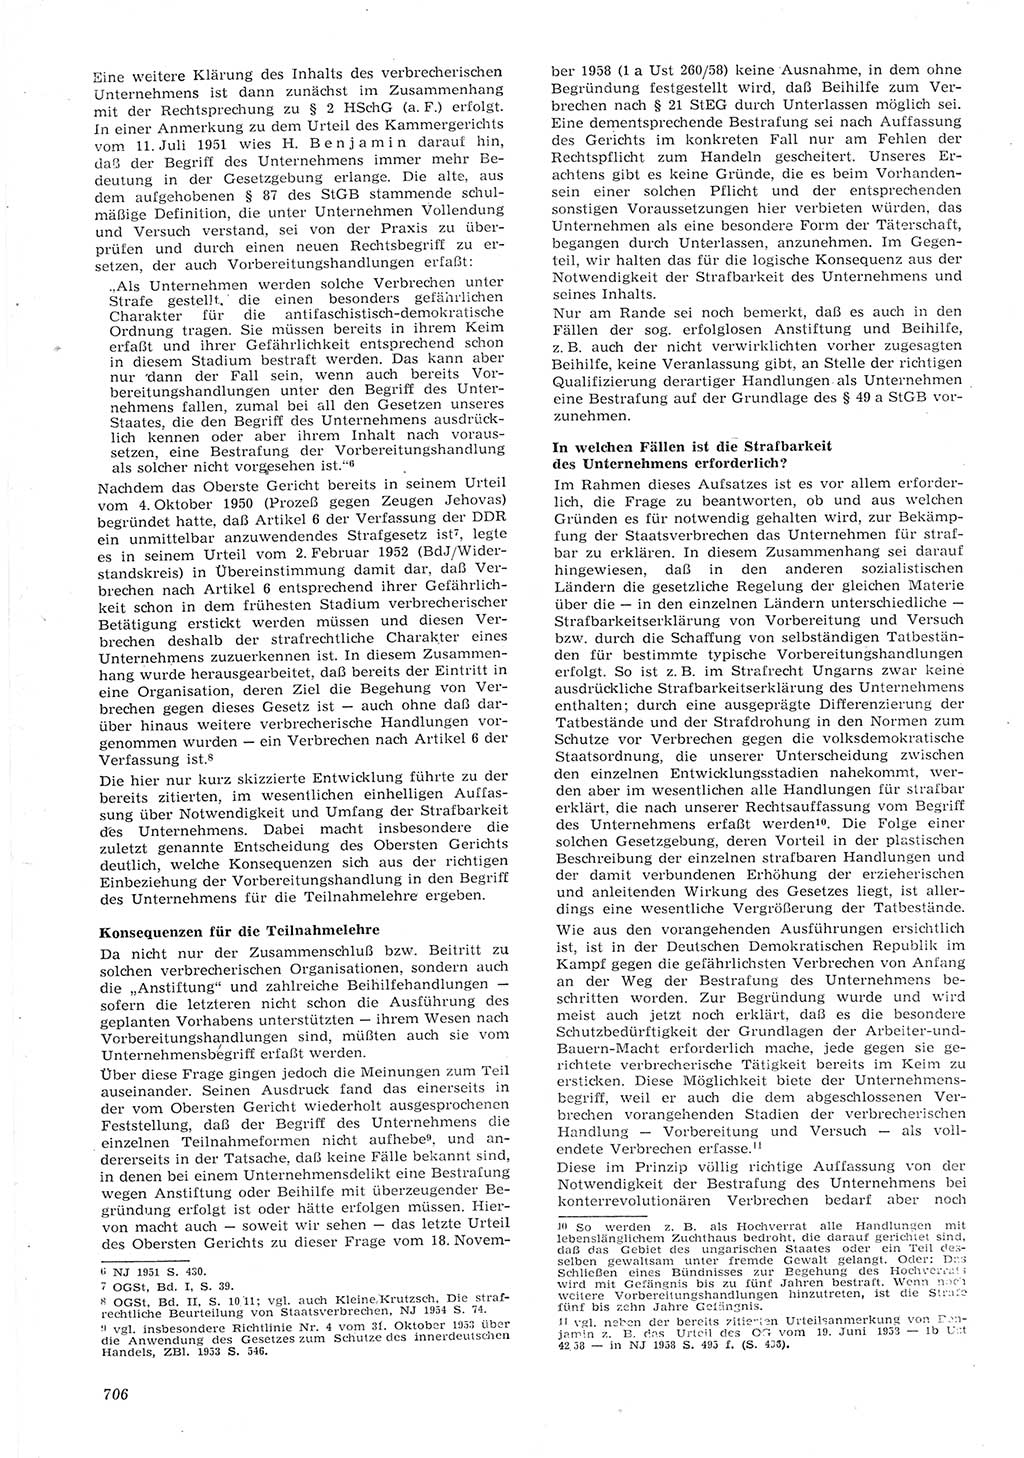 Neue Justiz (NJ), Zeitschrift für Recht und Rechtswissenschaft [Deutsche Demokratische Republik (DDR)], 15. Jahrgang 1961, Seite 706 (NJ DDR 1961, S. 706)